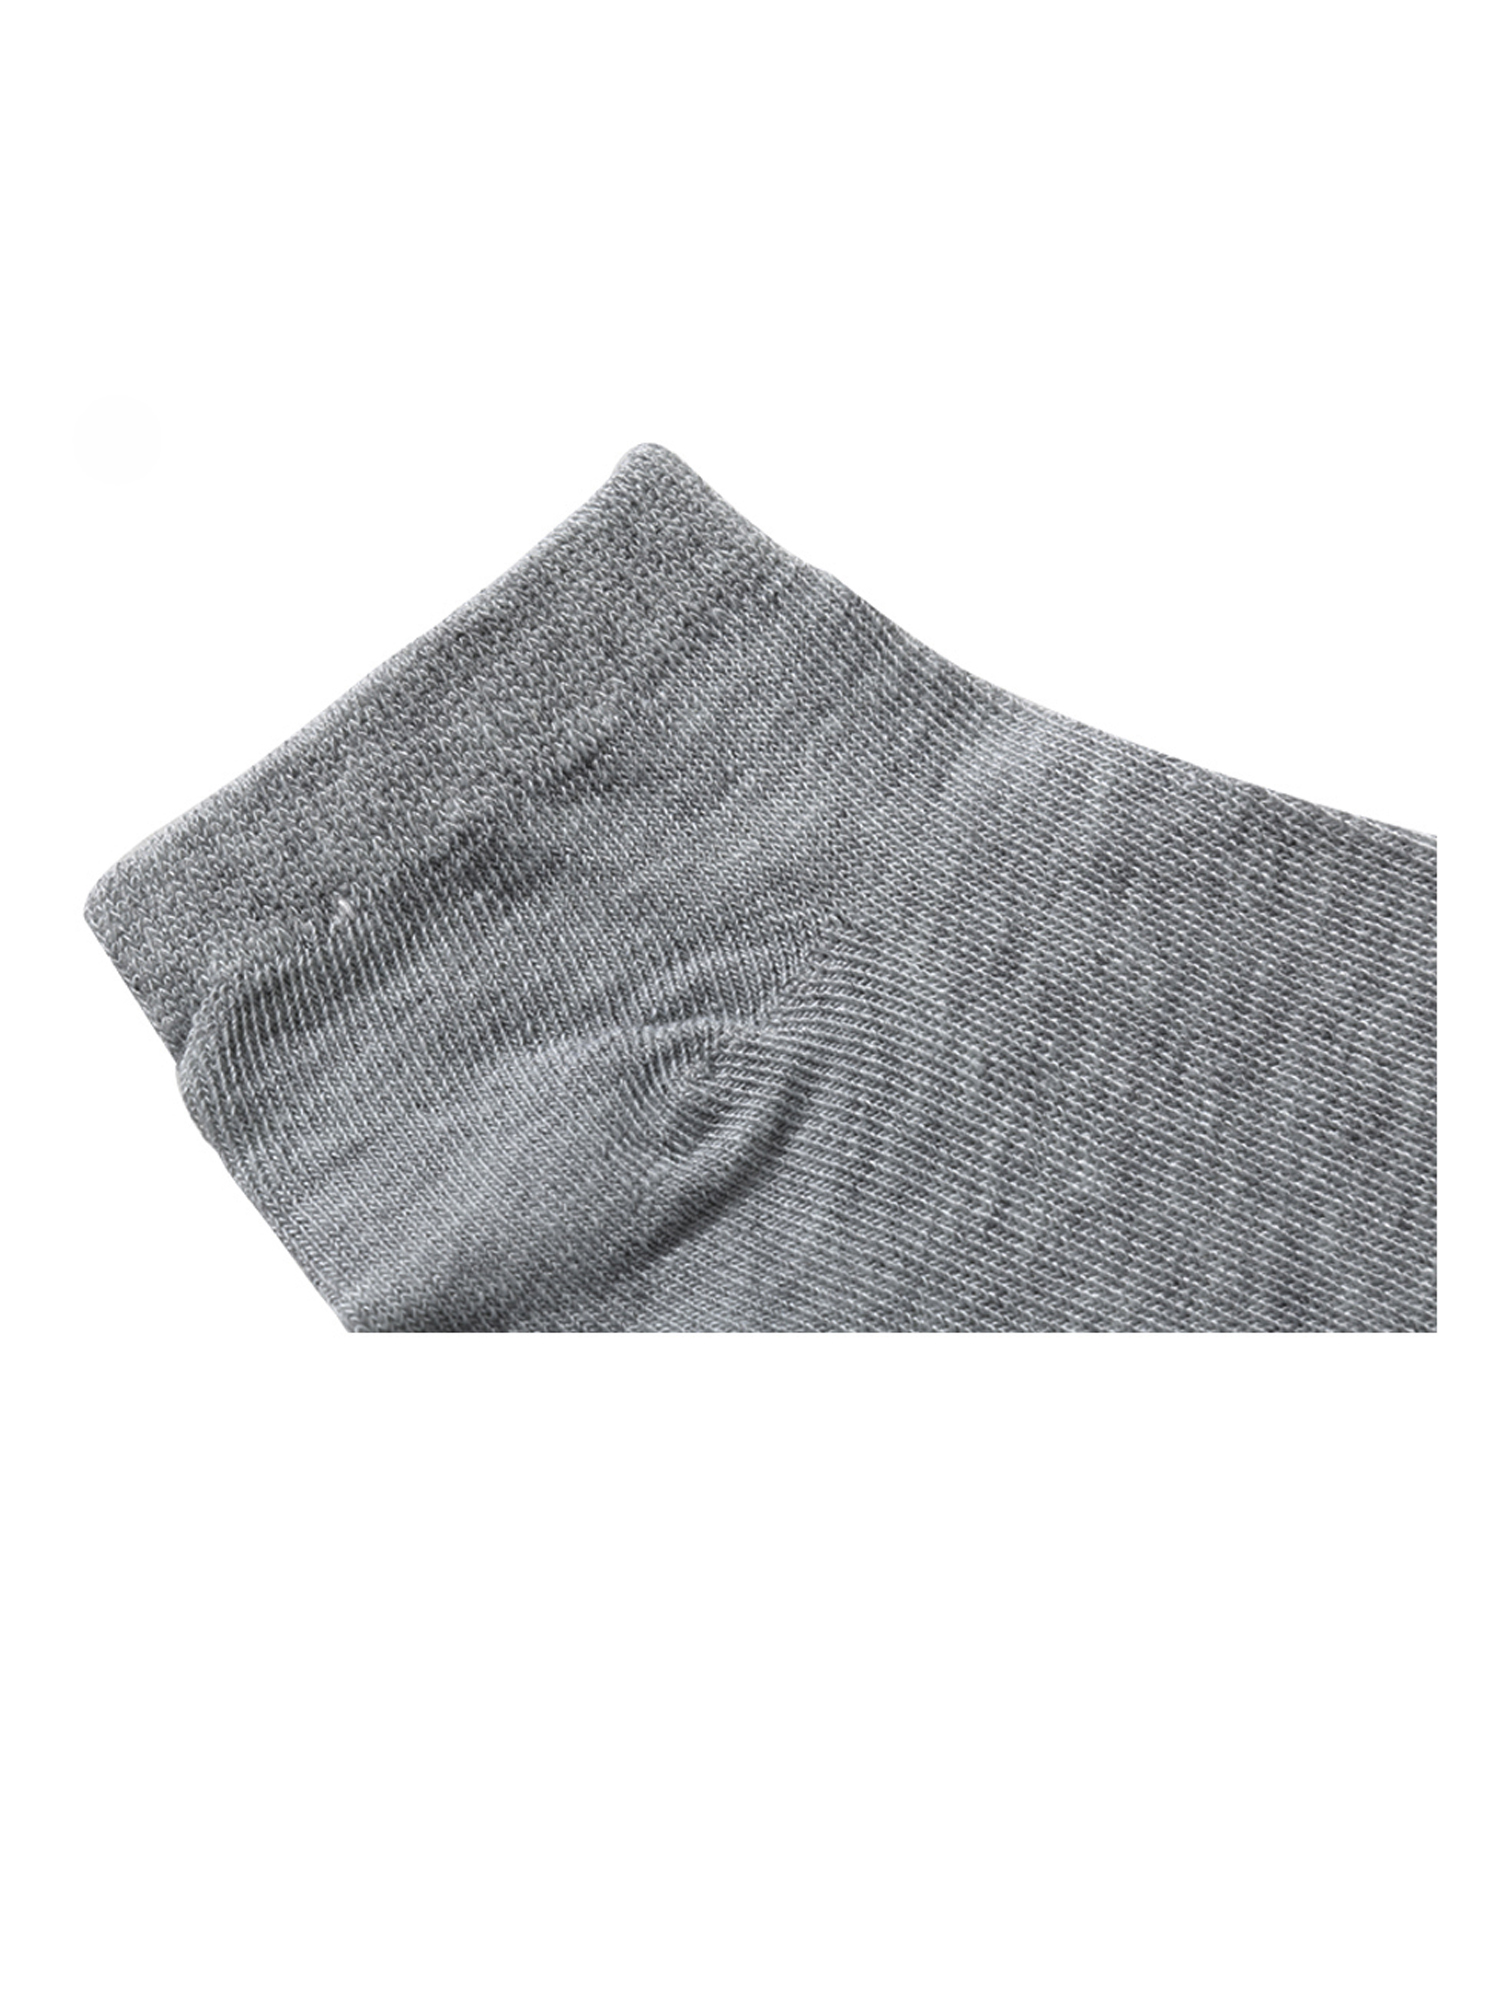 Unique Bargains Soft Cotton Athletic Ankle Socks 5-Pack (Junior & Women's) - image 4 of 7